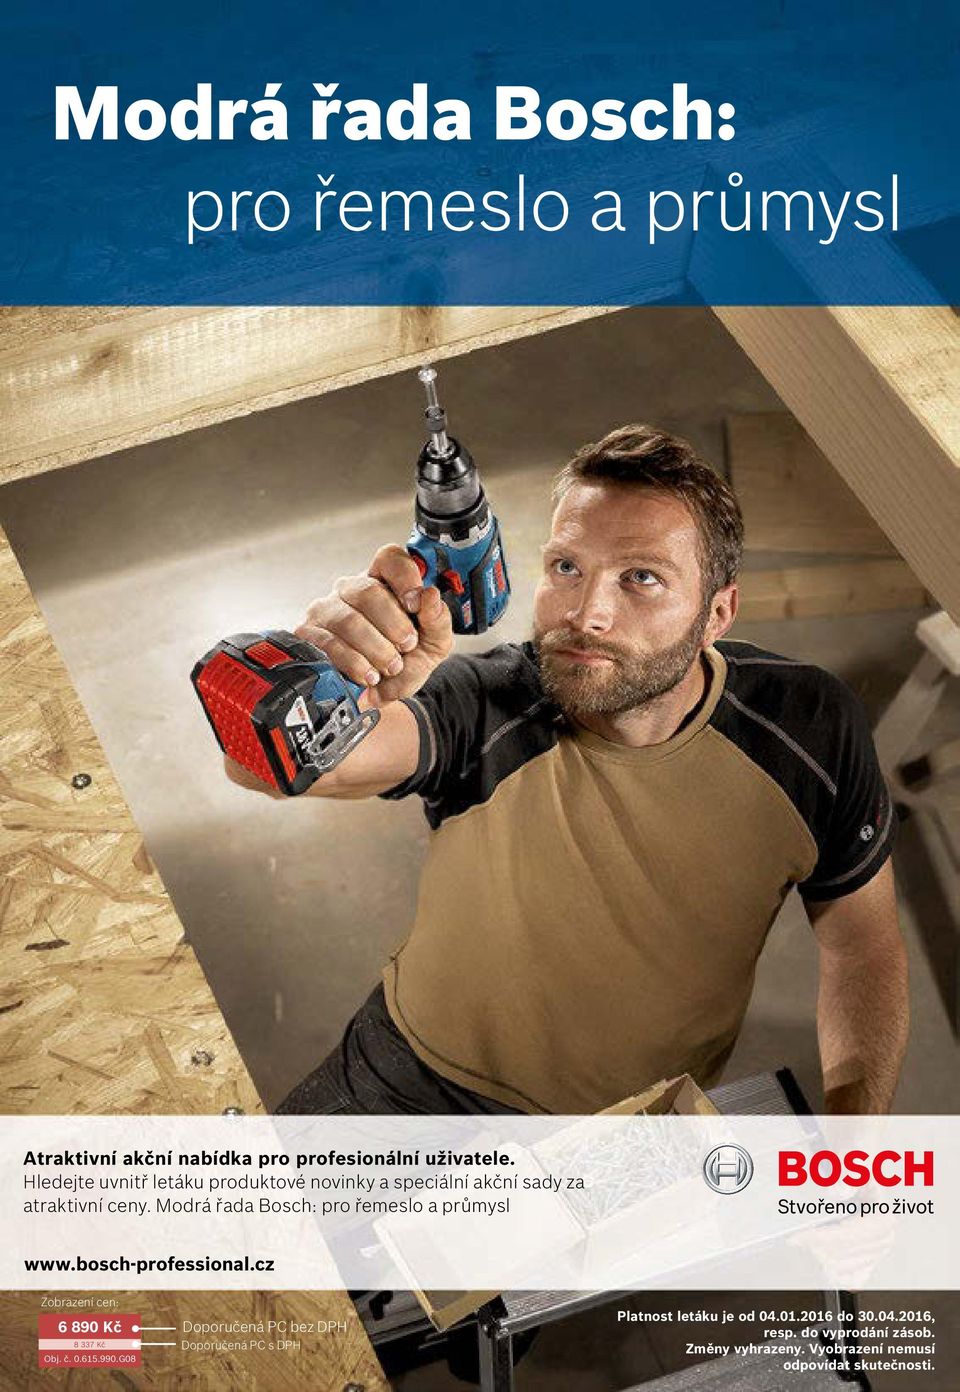 Modrá řada Bosch: pro řemeslo a průmysl www.bosch-professional.cz Zobrazení cen: 6 890 Kč 8 337 Kč Obj. č. 0.615.990.